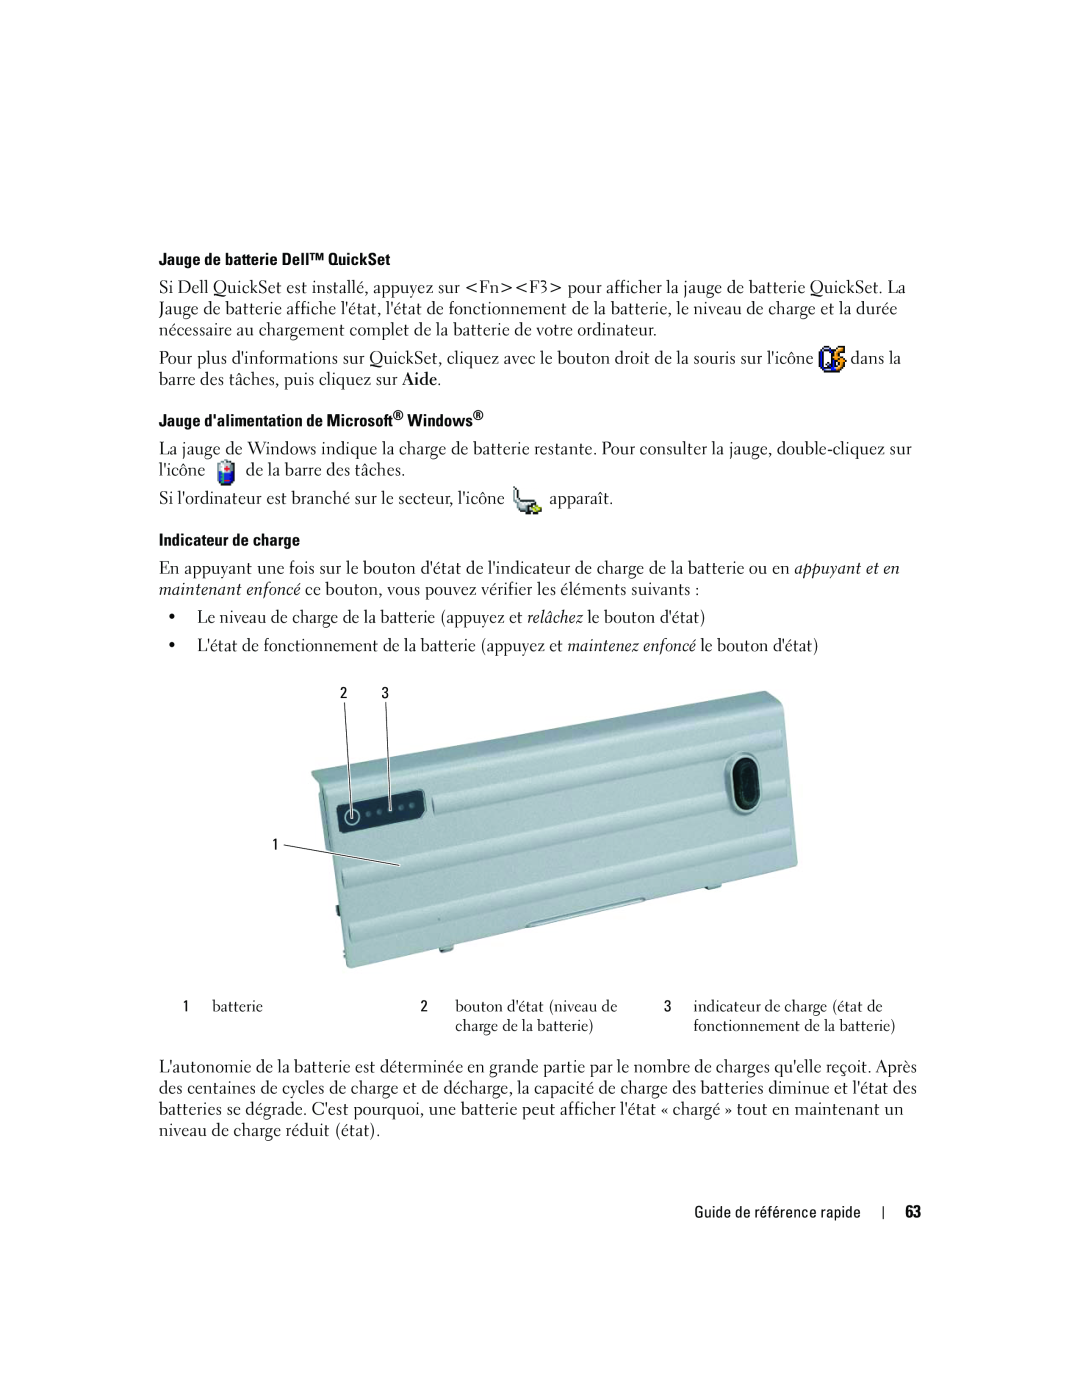 Dell ATG D620 manual Jauge de batterie Dell QuickSet, Jauge dalimentation de Microsoft Windows, Indicateur de charge 